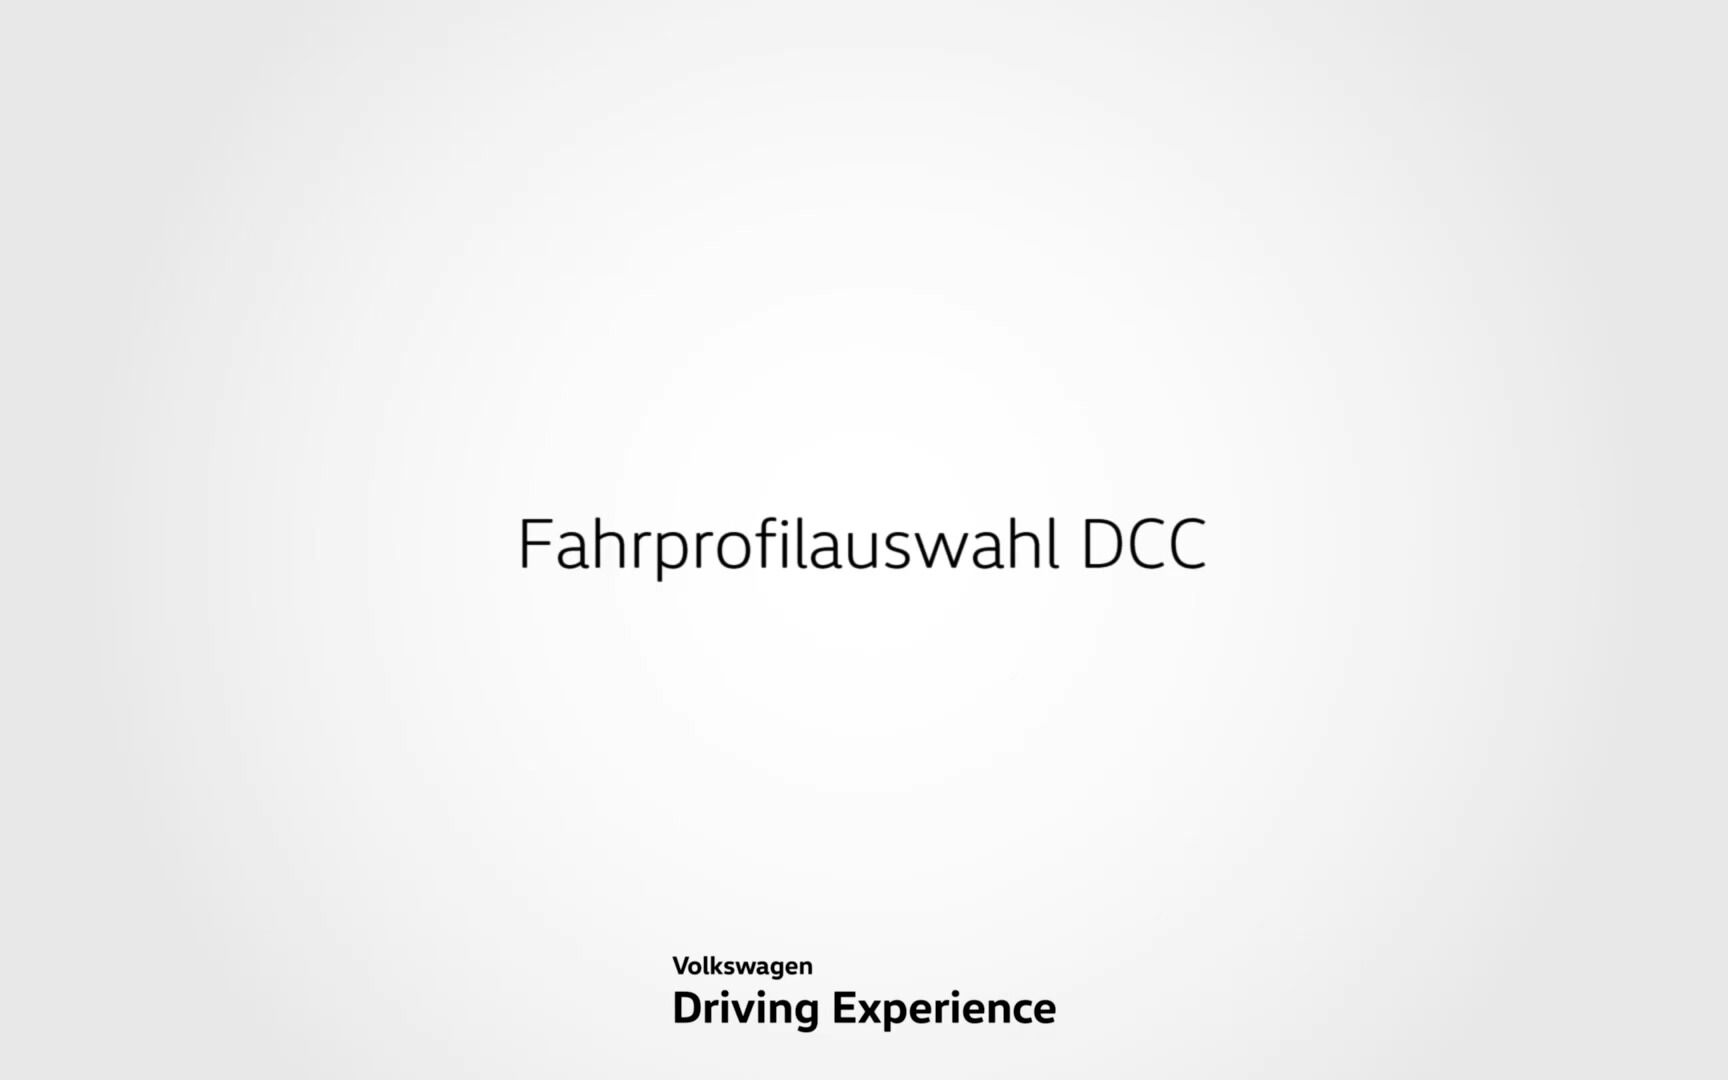 Fahrprofilauswahl DCC - Volkswagen